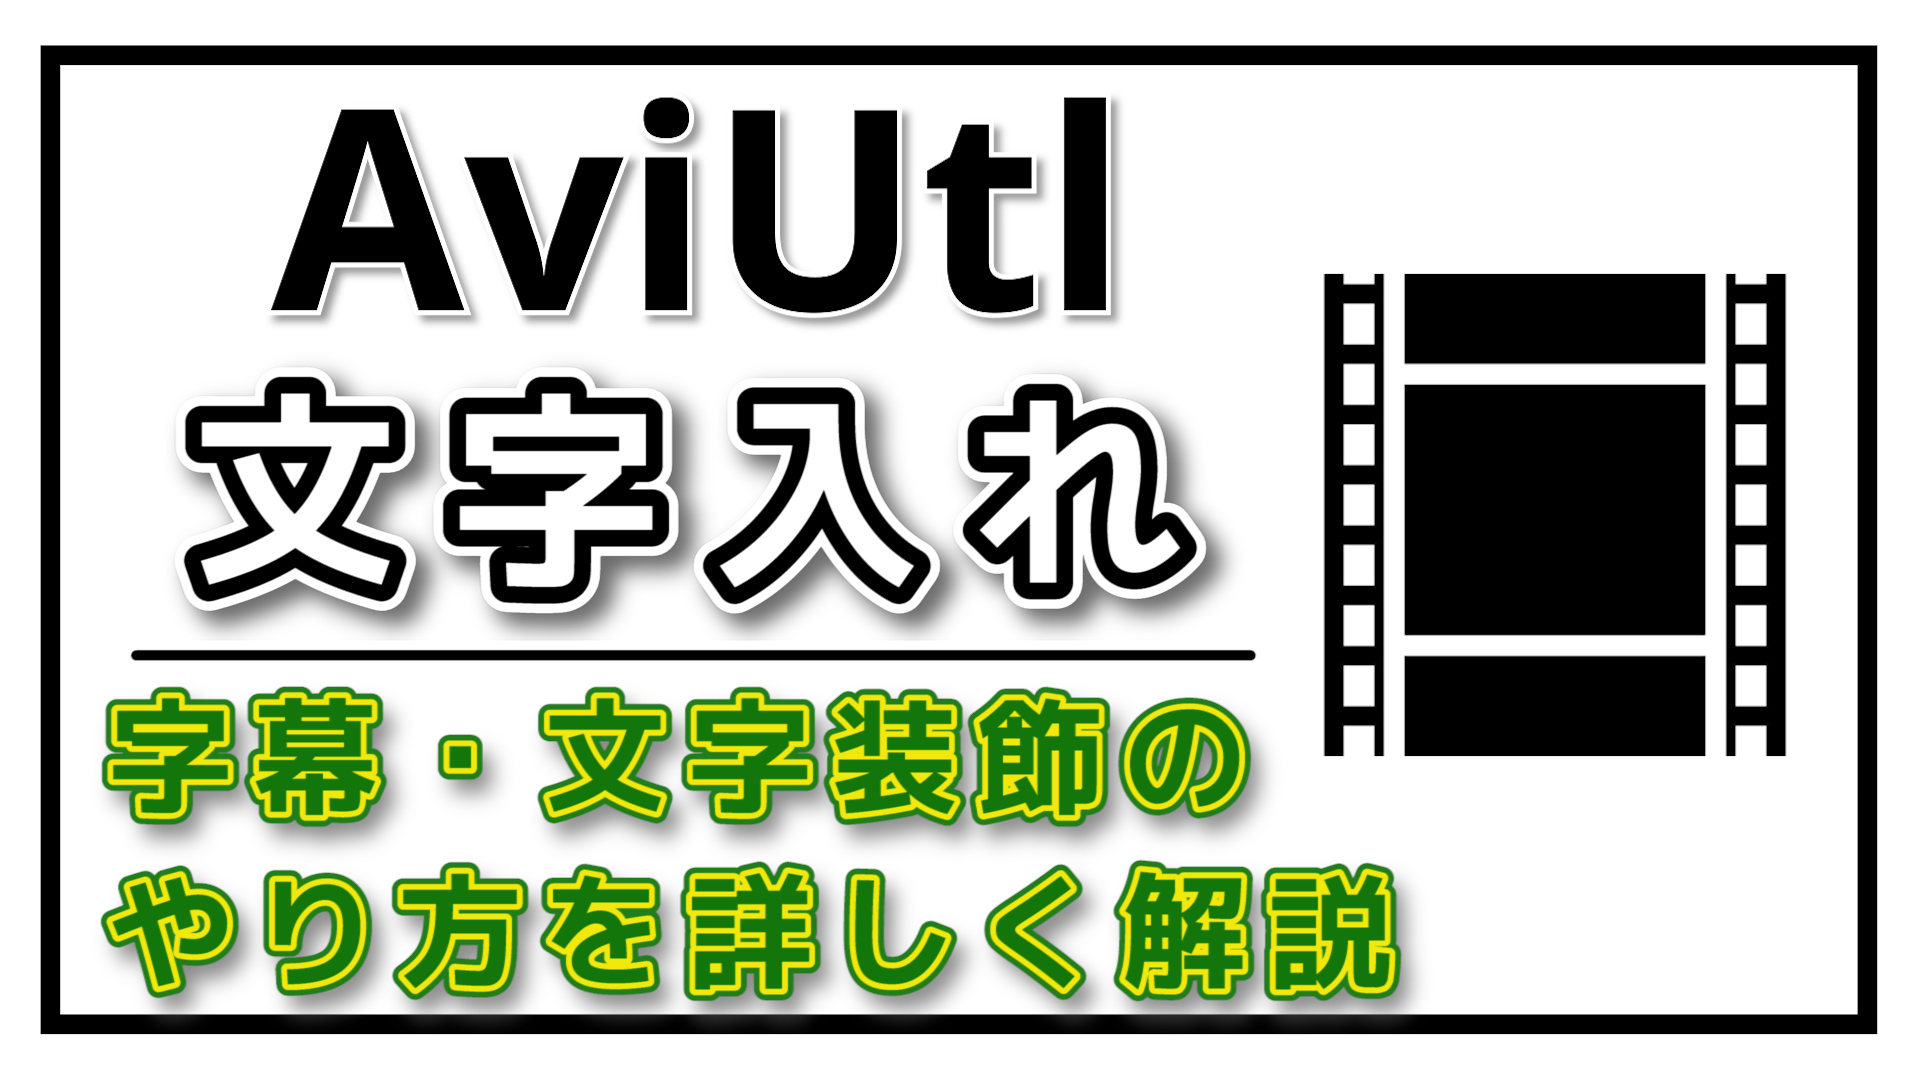 動画編集 Aviutlで文字を入れる方法 字幕 テキスト 文字装飾のやり方も解説 やまチャンネルブログ Youtube